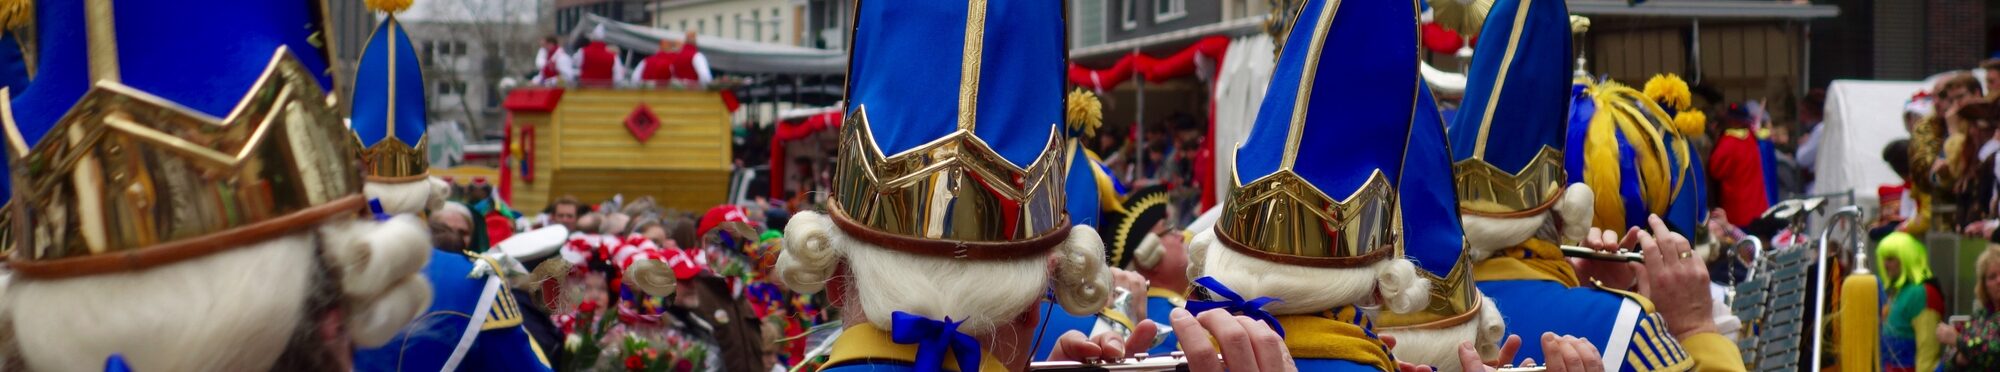 Motivbild Karnevalsumzug [Foto: © picturetom - stock.adobe.com]